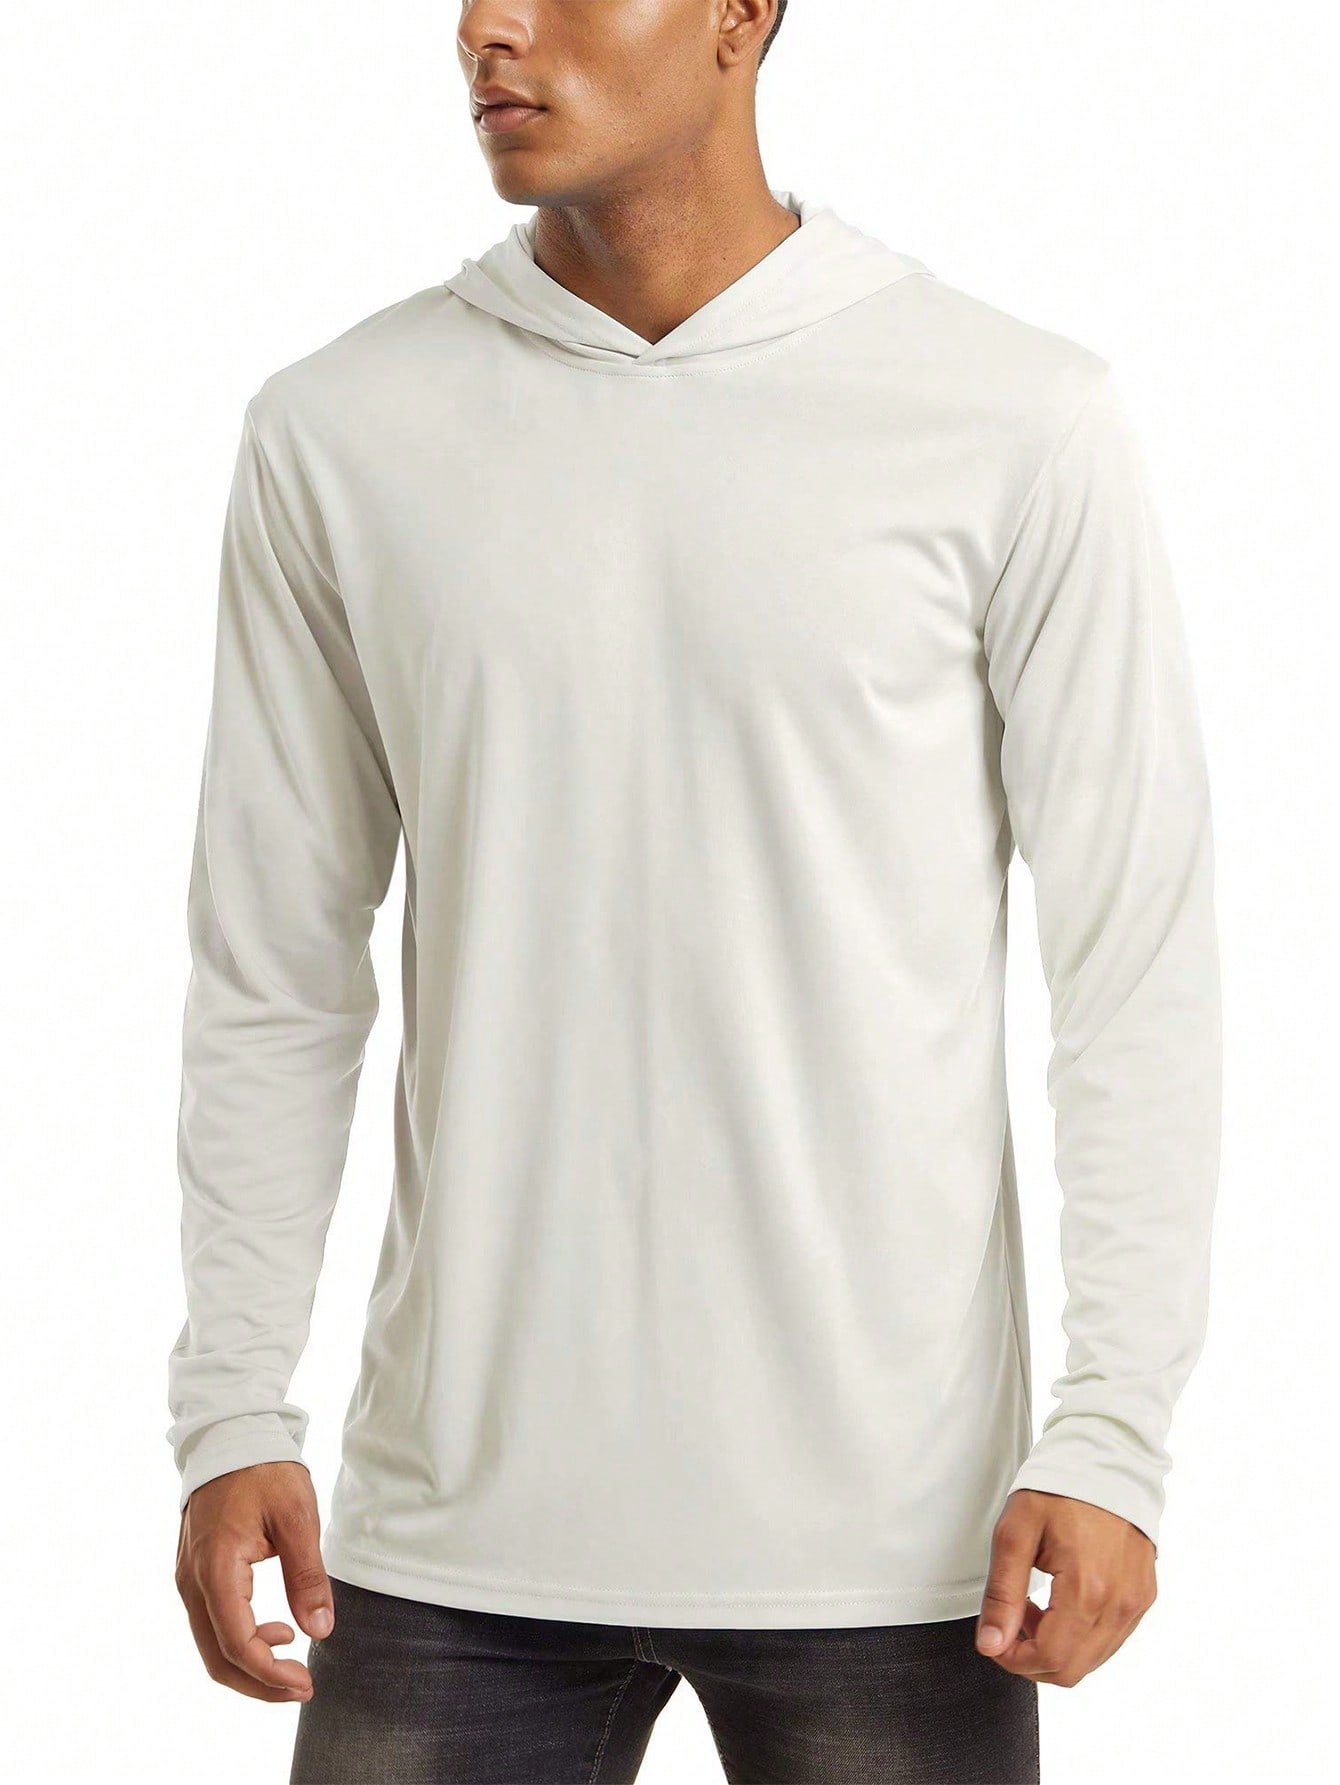 NASBING Мужская быстросохнущая спортивная футболка с капюшоном, белый